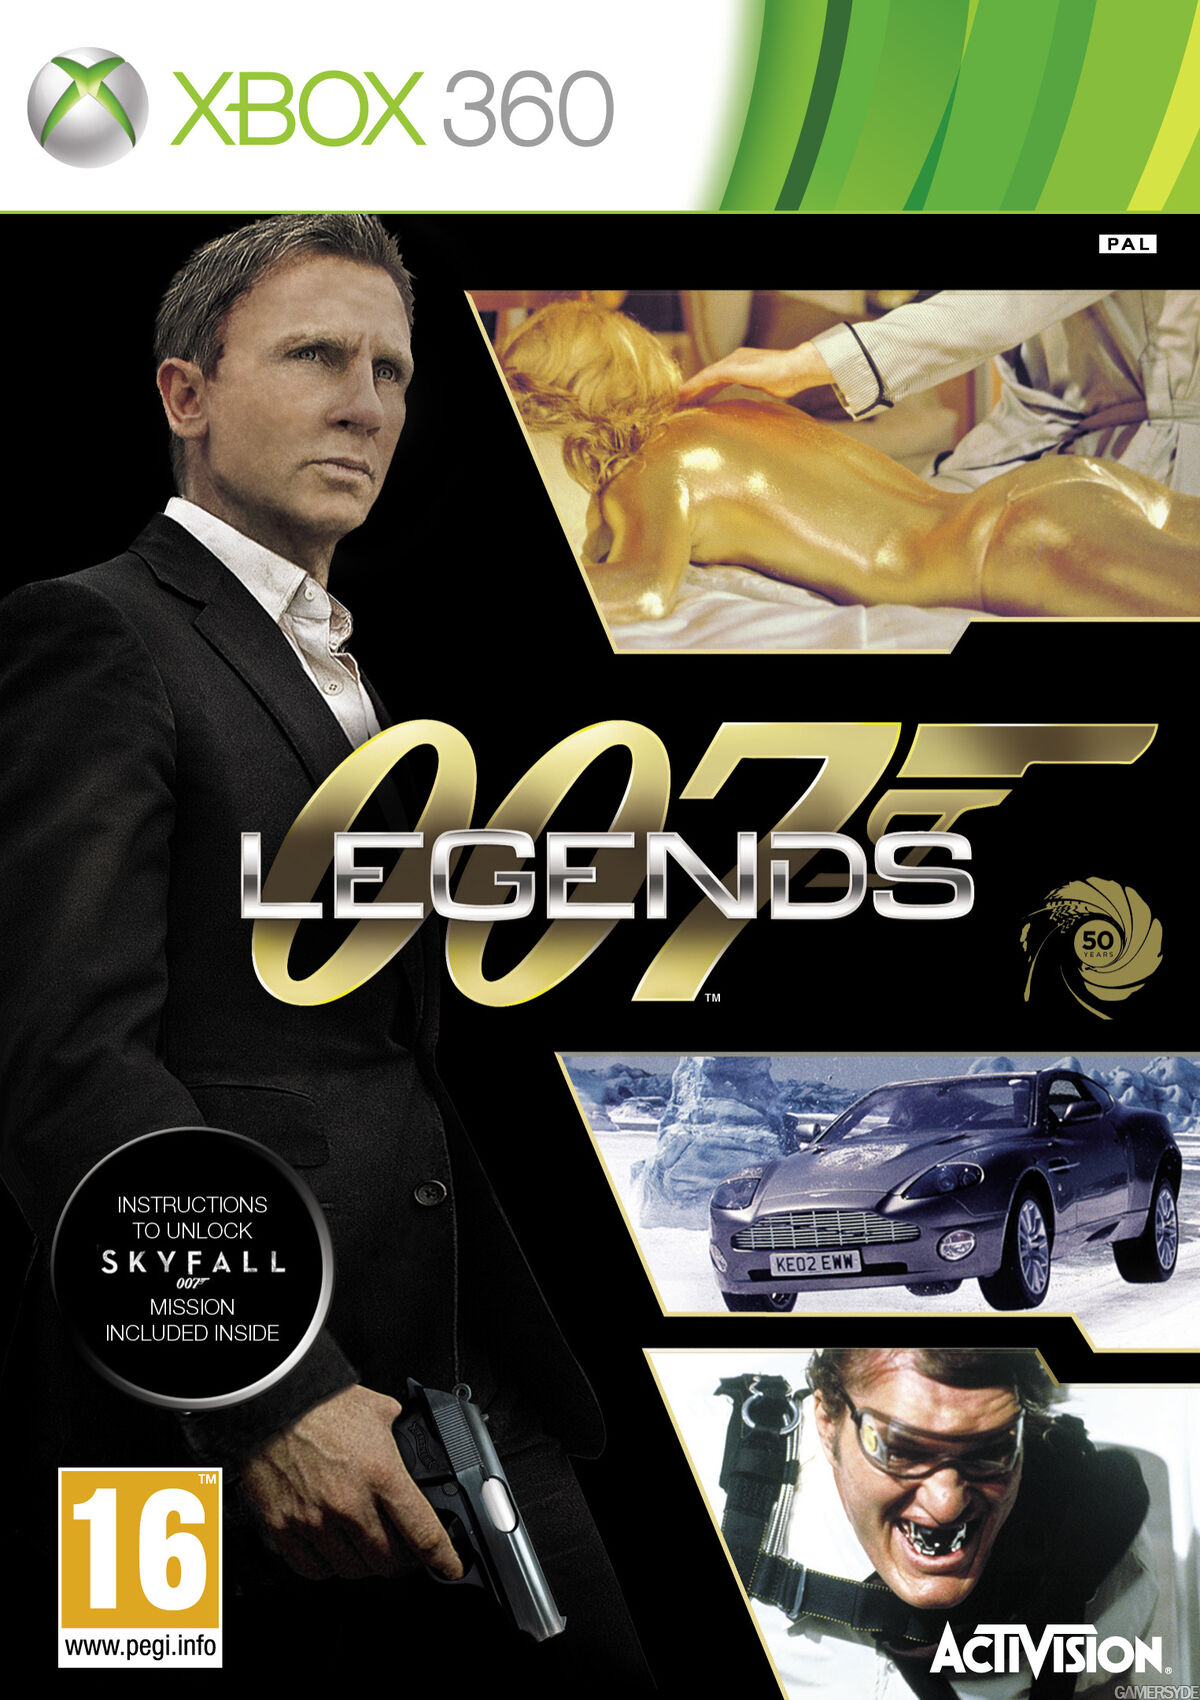 GoldenEye 007: Reloaded (Original Video Game Soundtrack) - David Arnold &  Kevin Kiner (2010) 